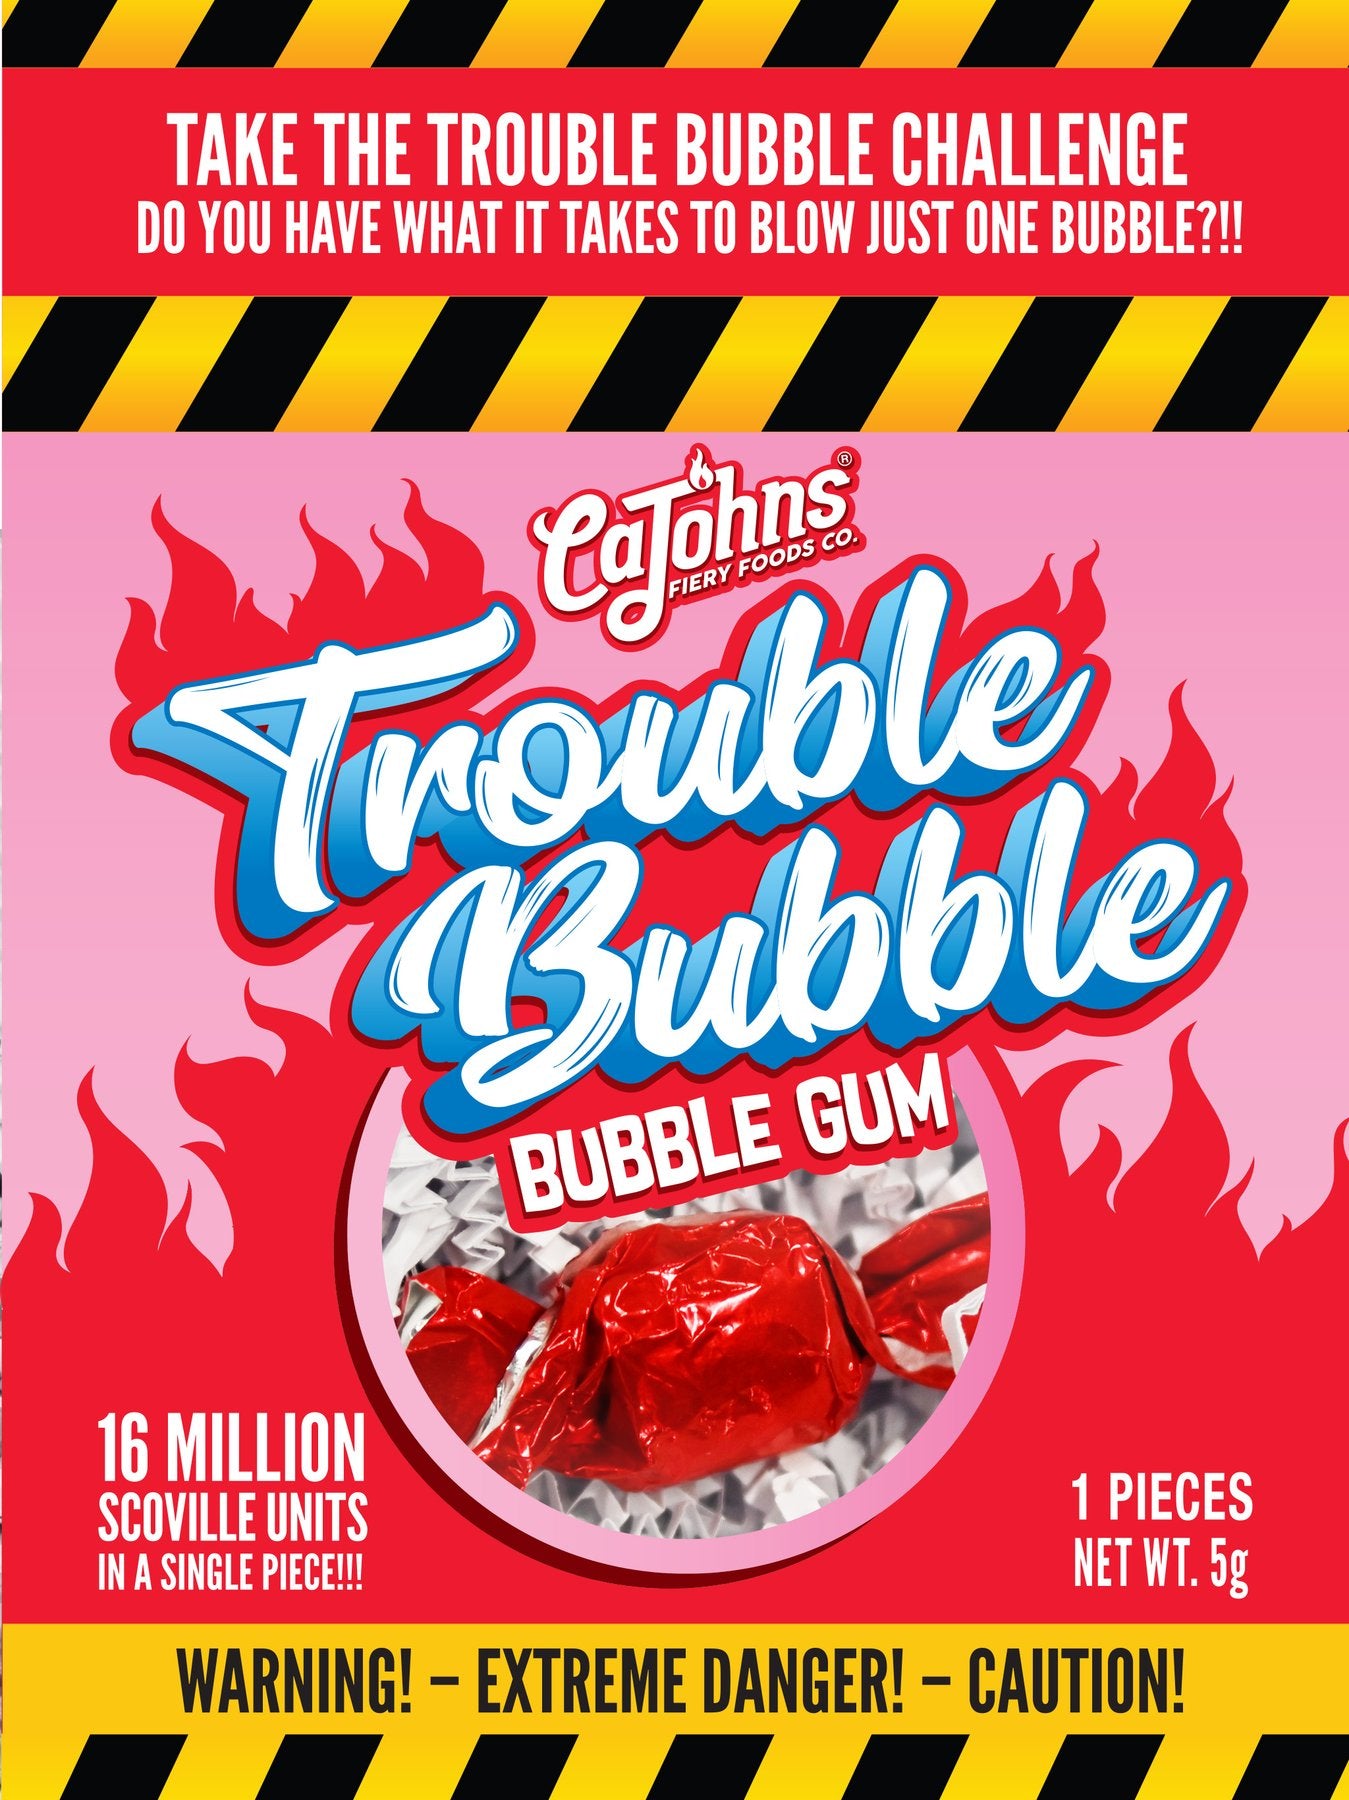 CaJohns Trouble Bubble Bubble Gum Challenge - 1 piece  (5gm)